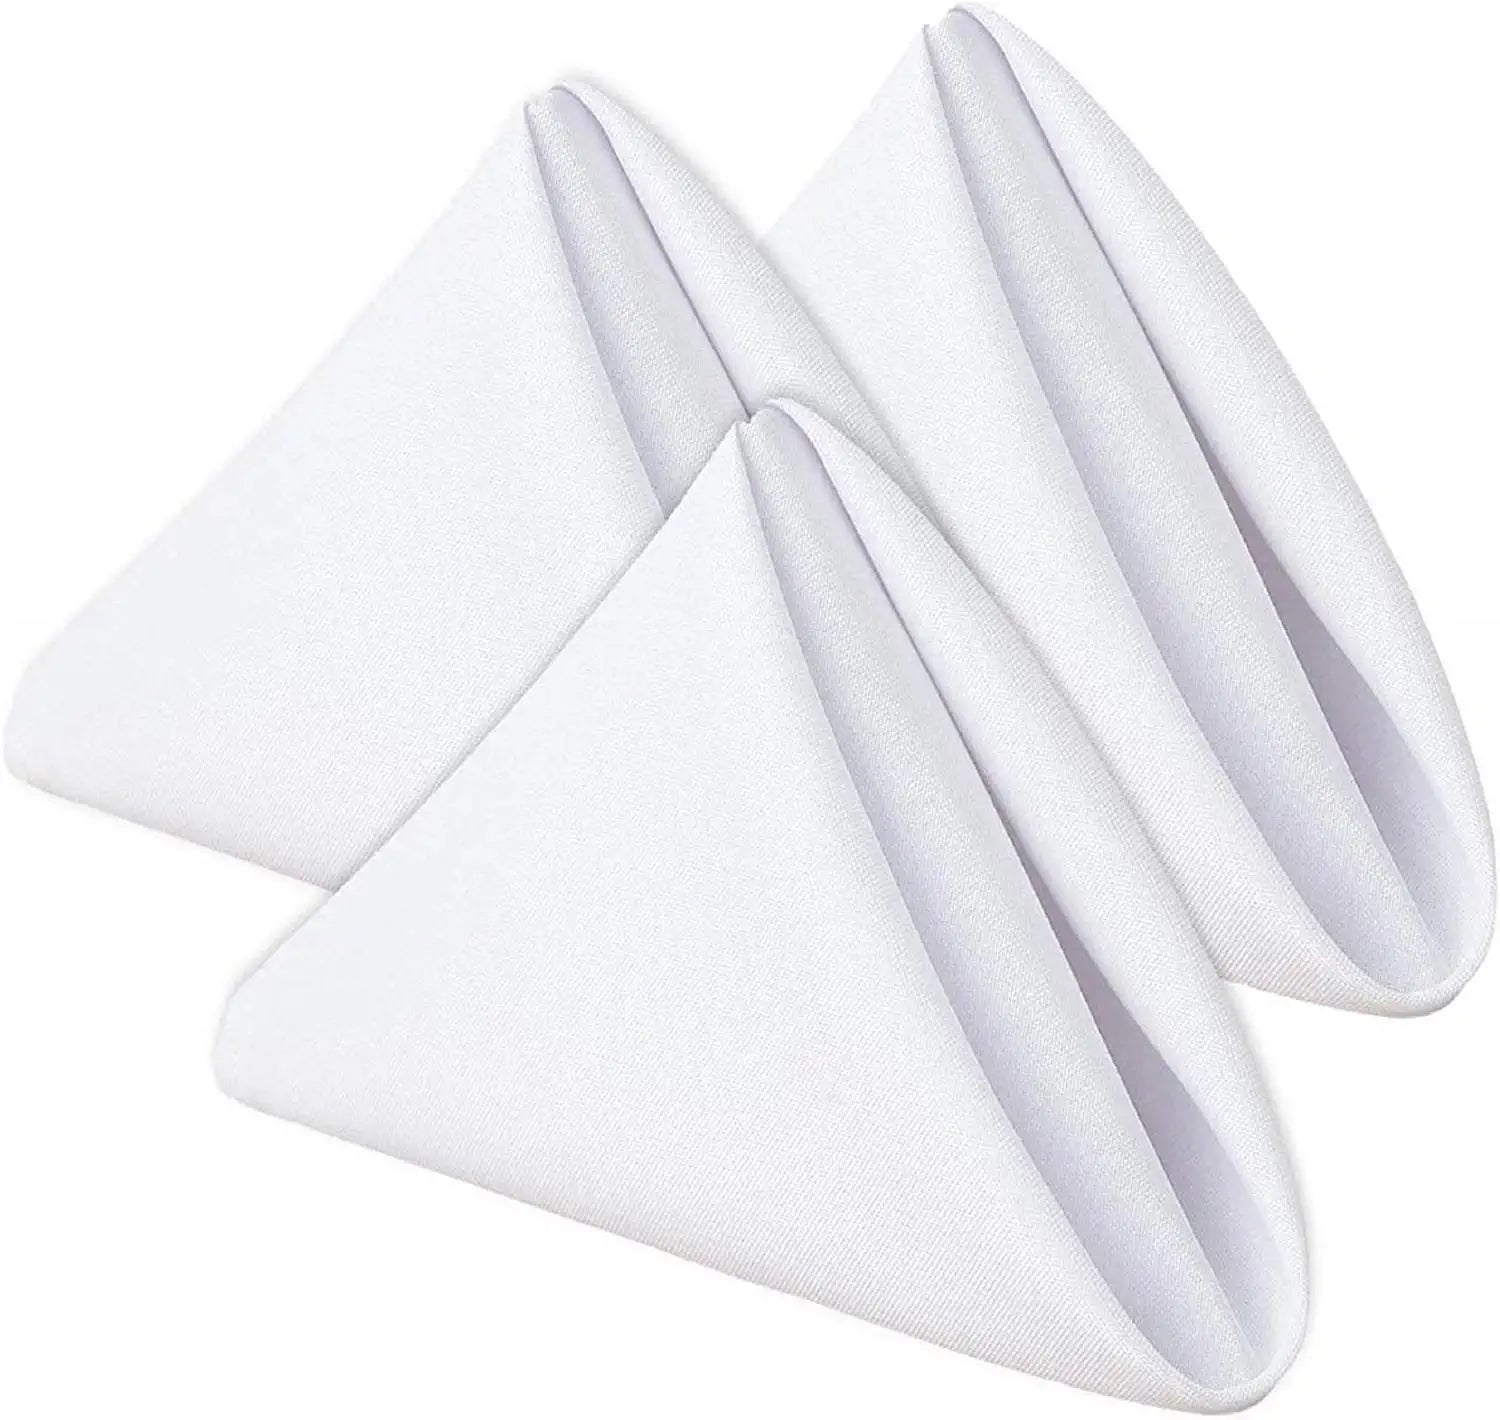 white table napkins